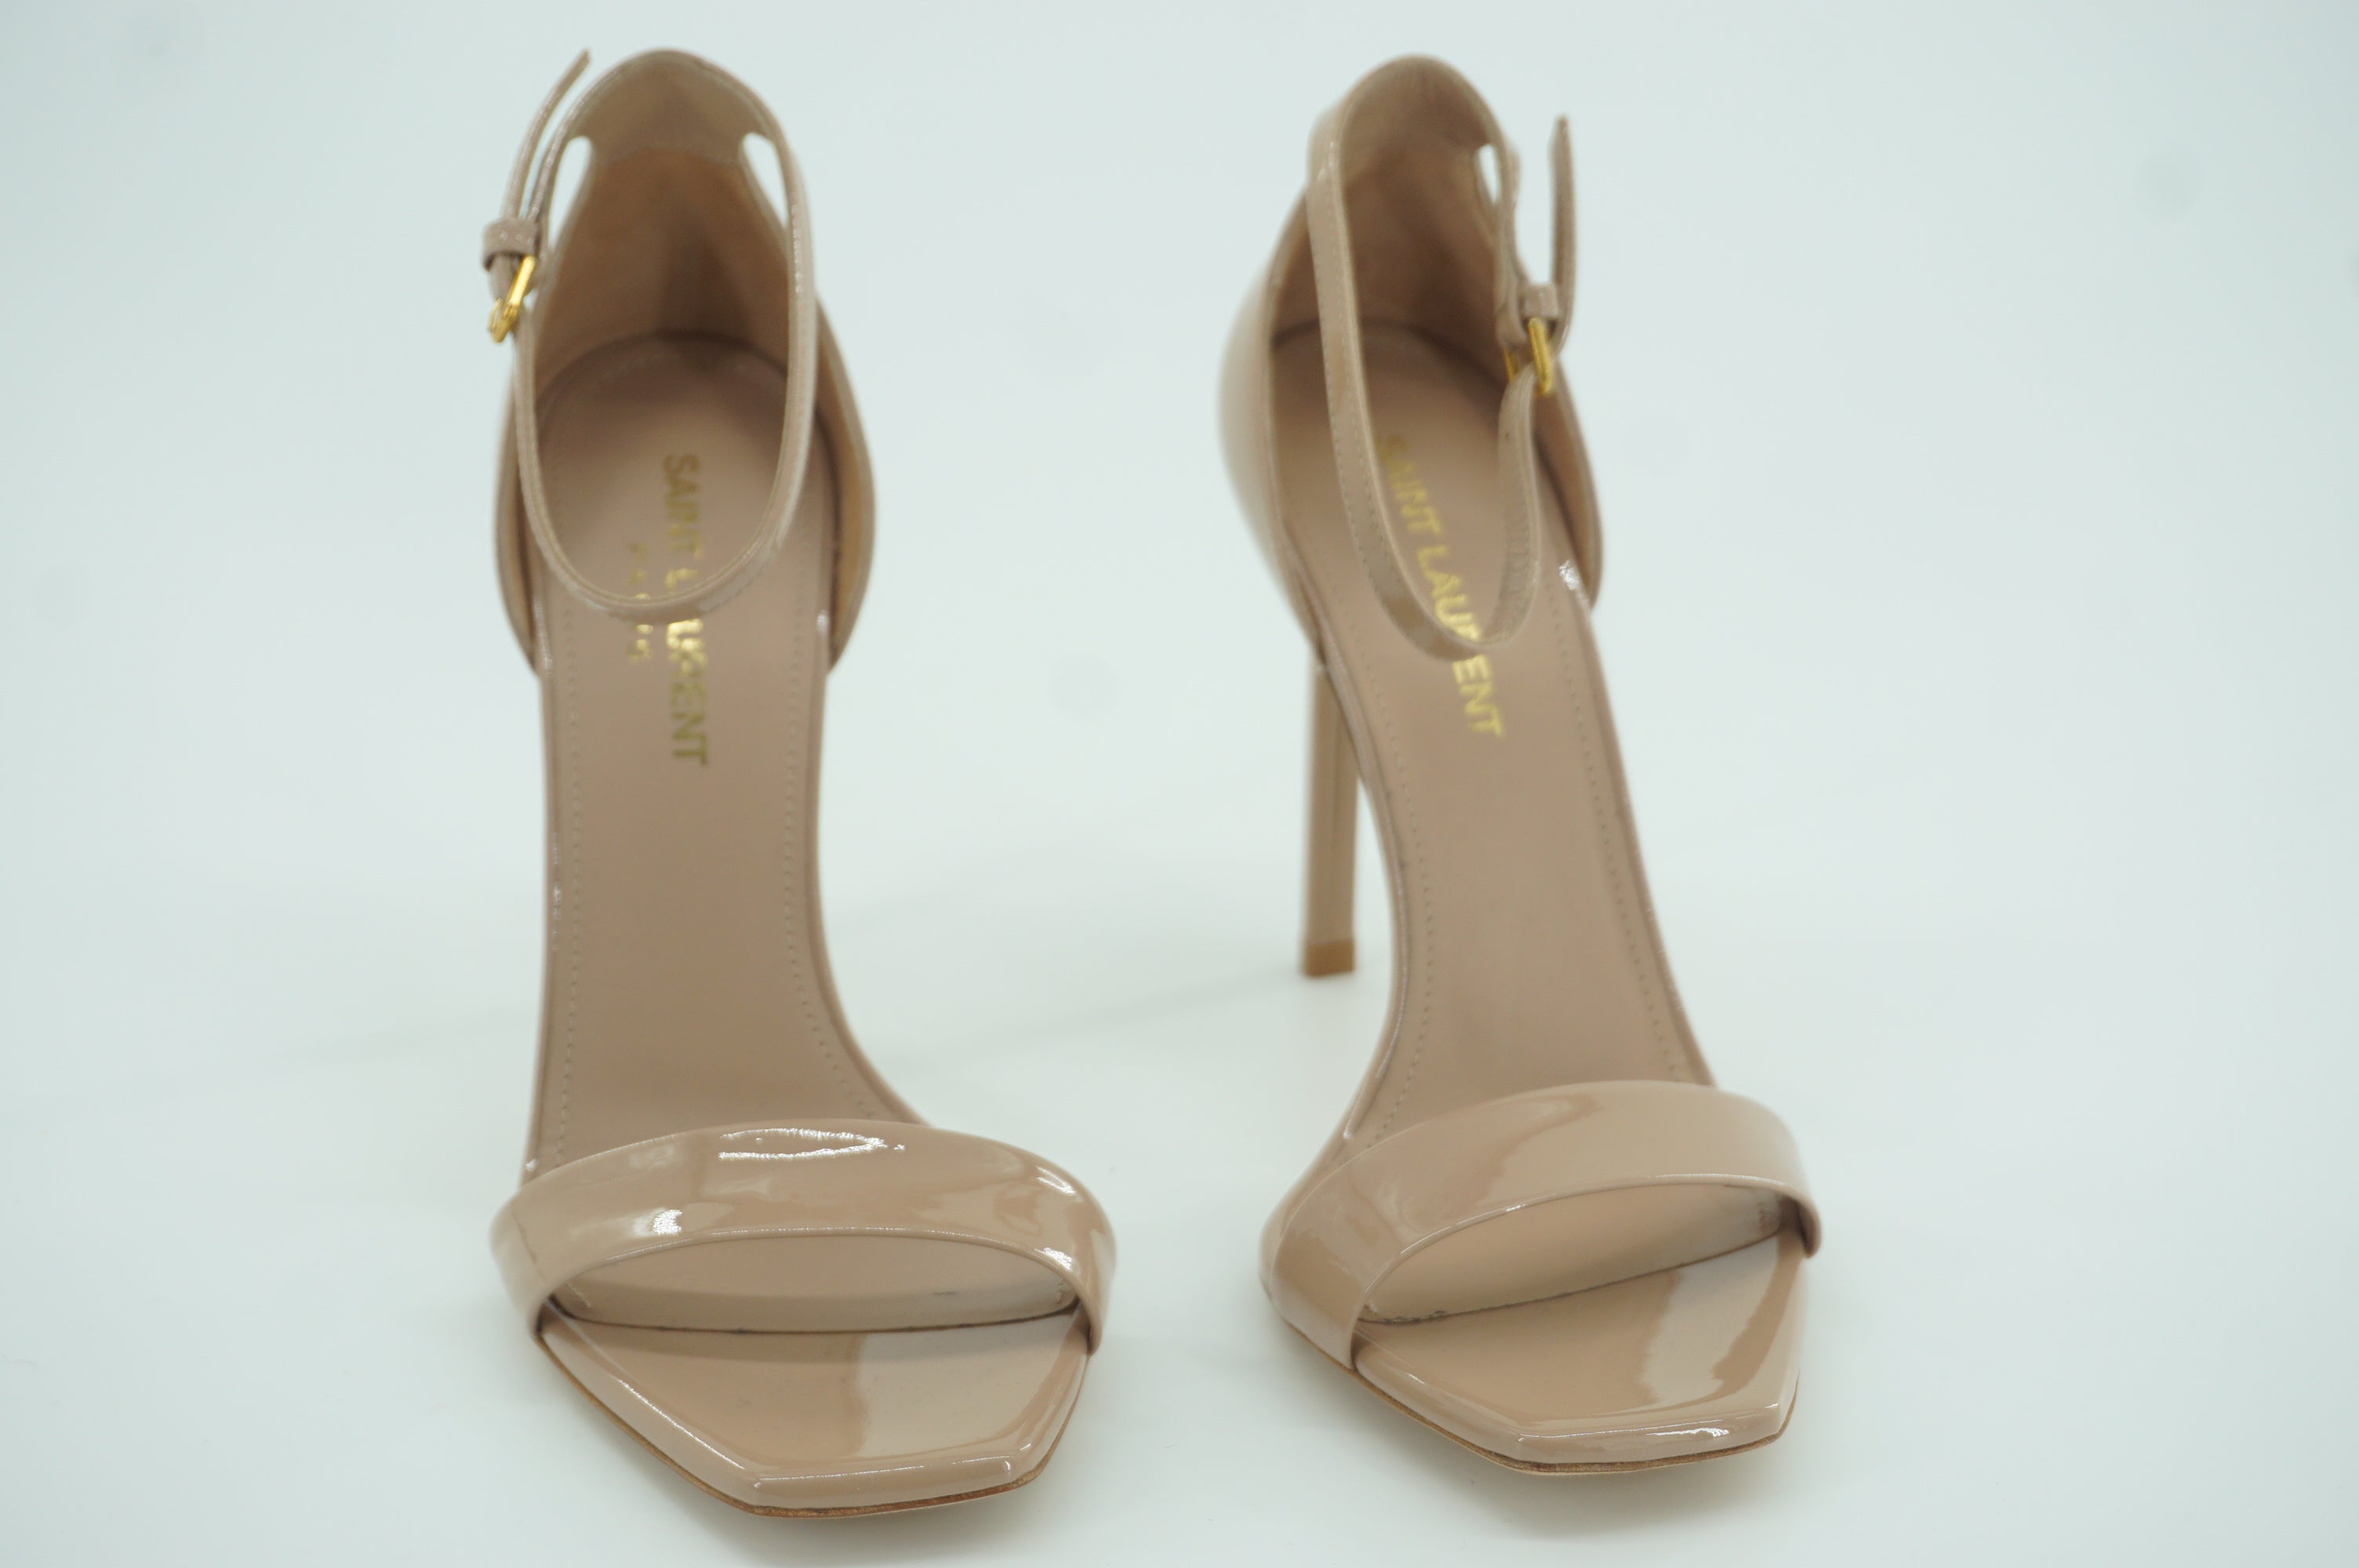 Saint Laurent Paris Amnber Nude Patent Sandals size 36 Pumps Ankle Strappy YSL